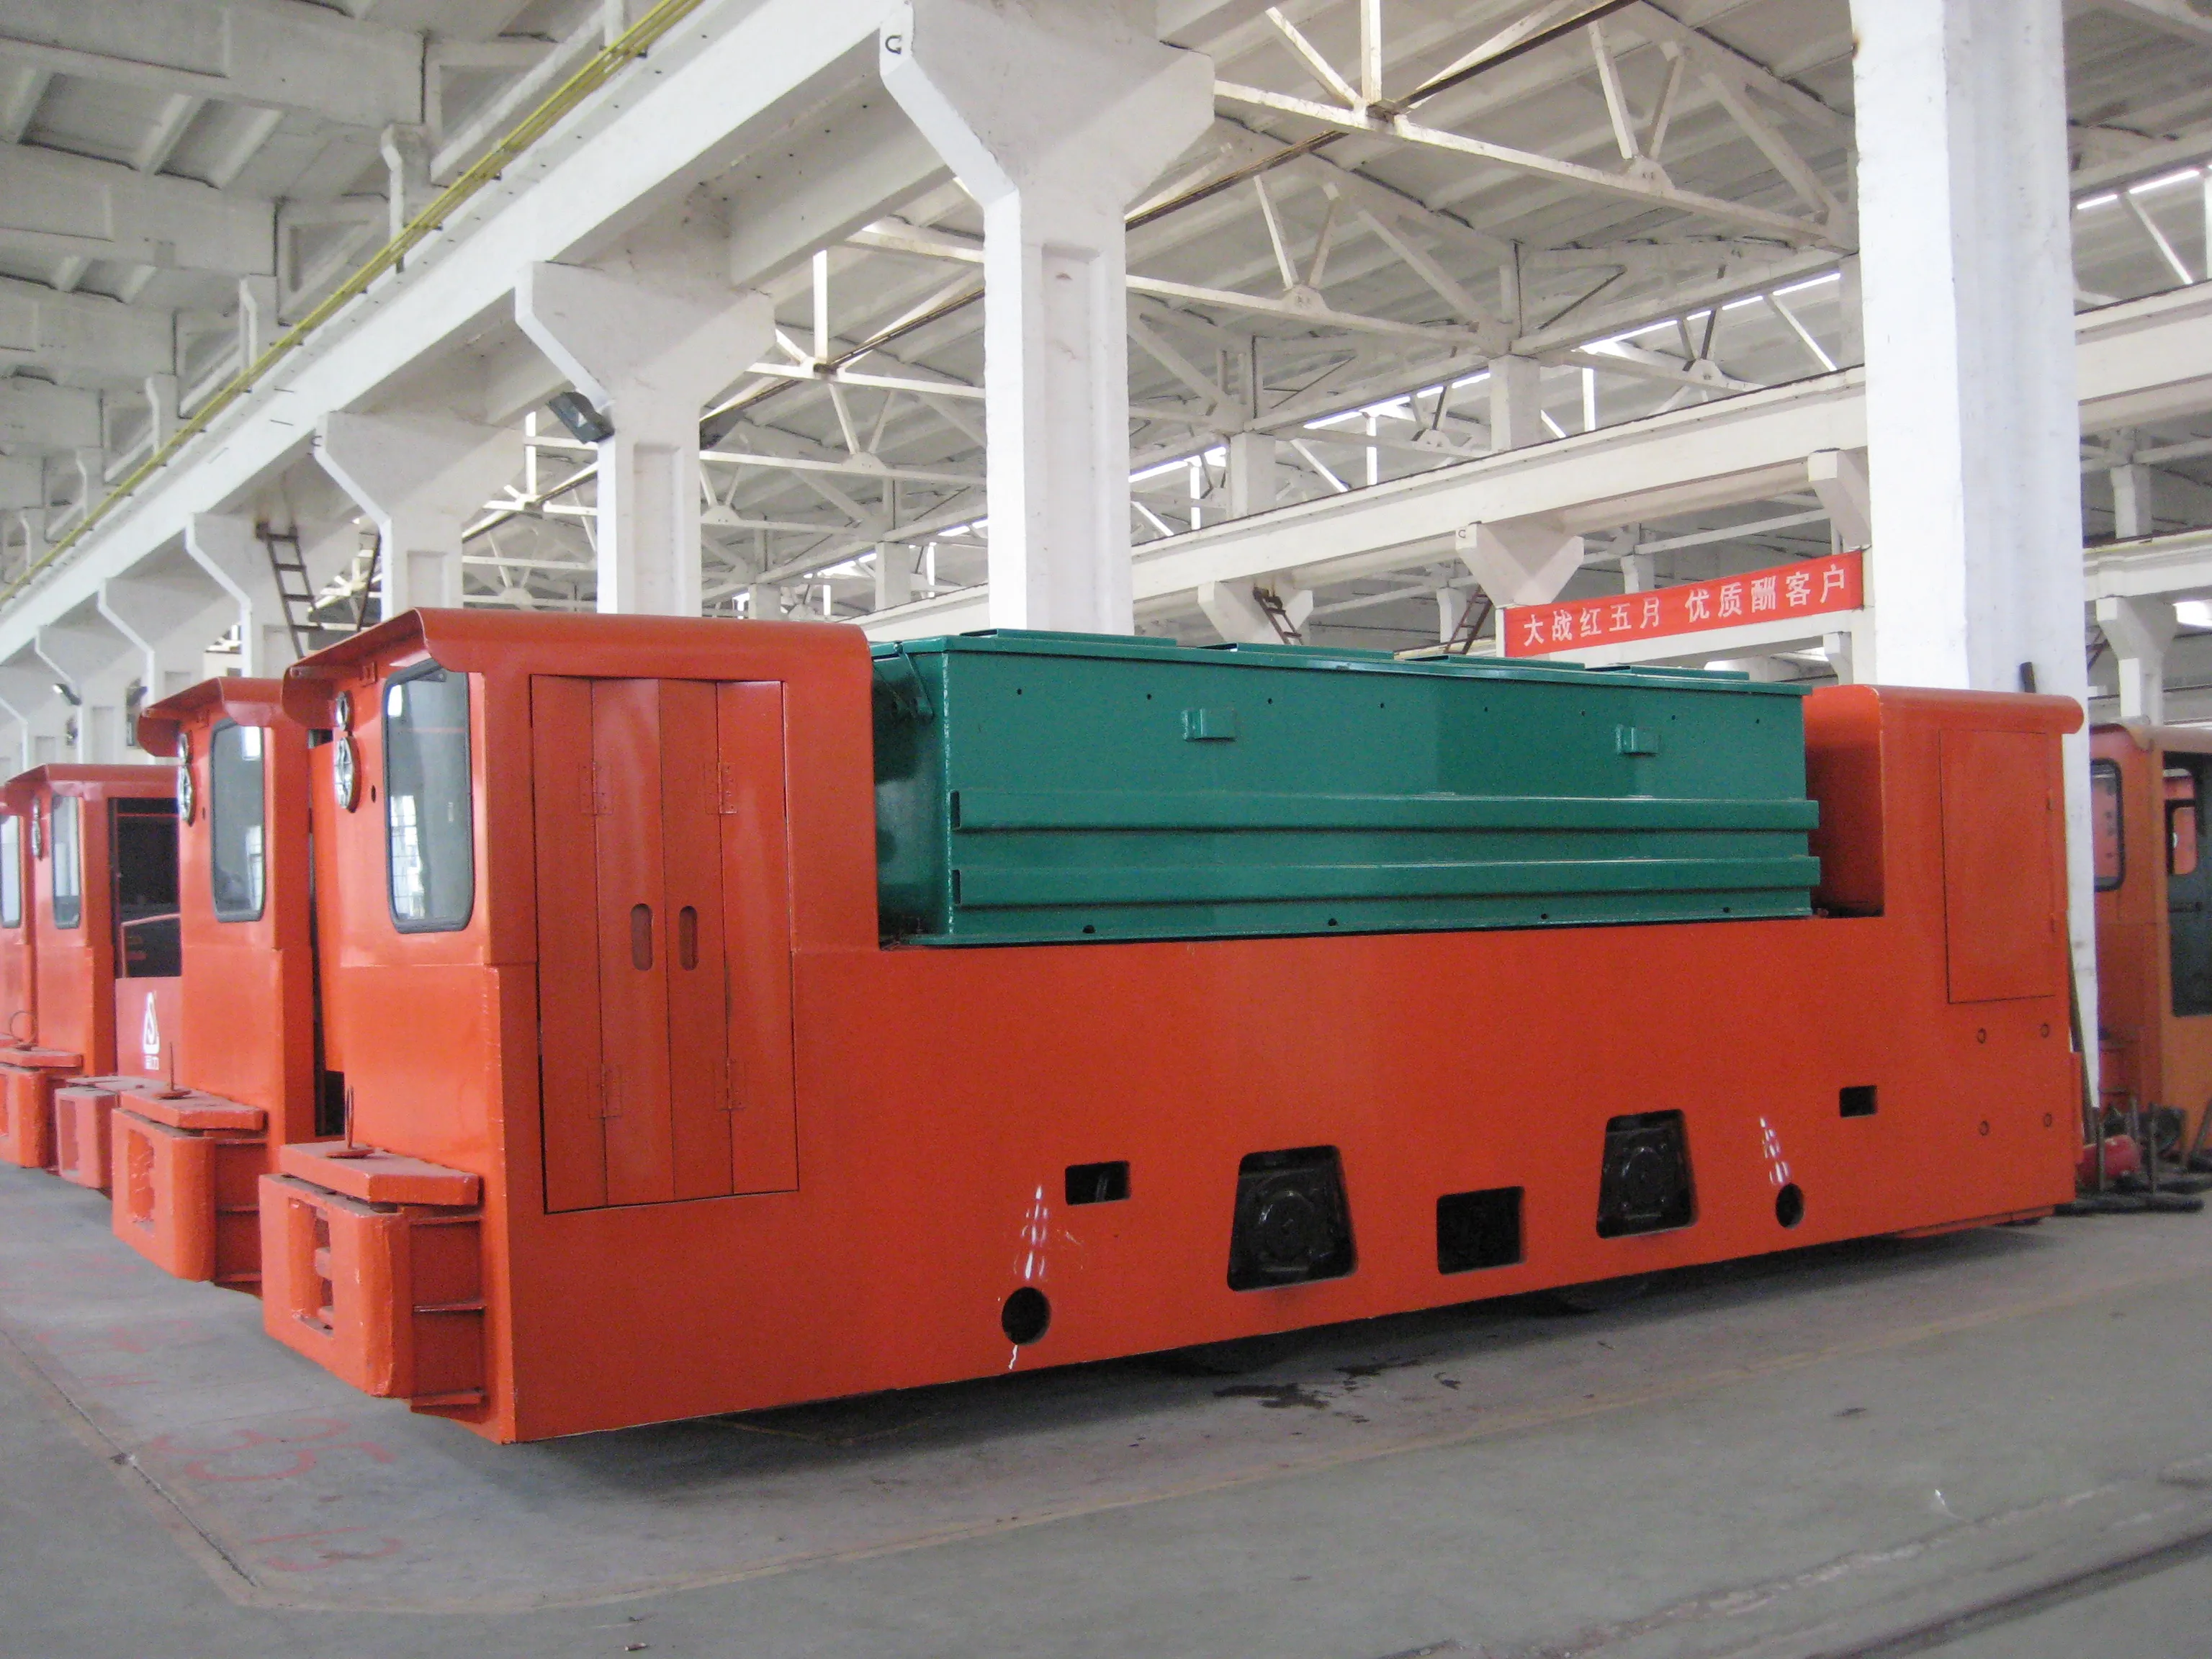 15 тонн китайские добычи батарея Электрический локомотив Медный Рудник противовзрывная Защитная пленка для подземного рудника локомотив